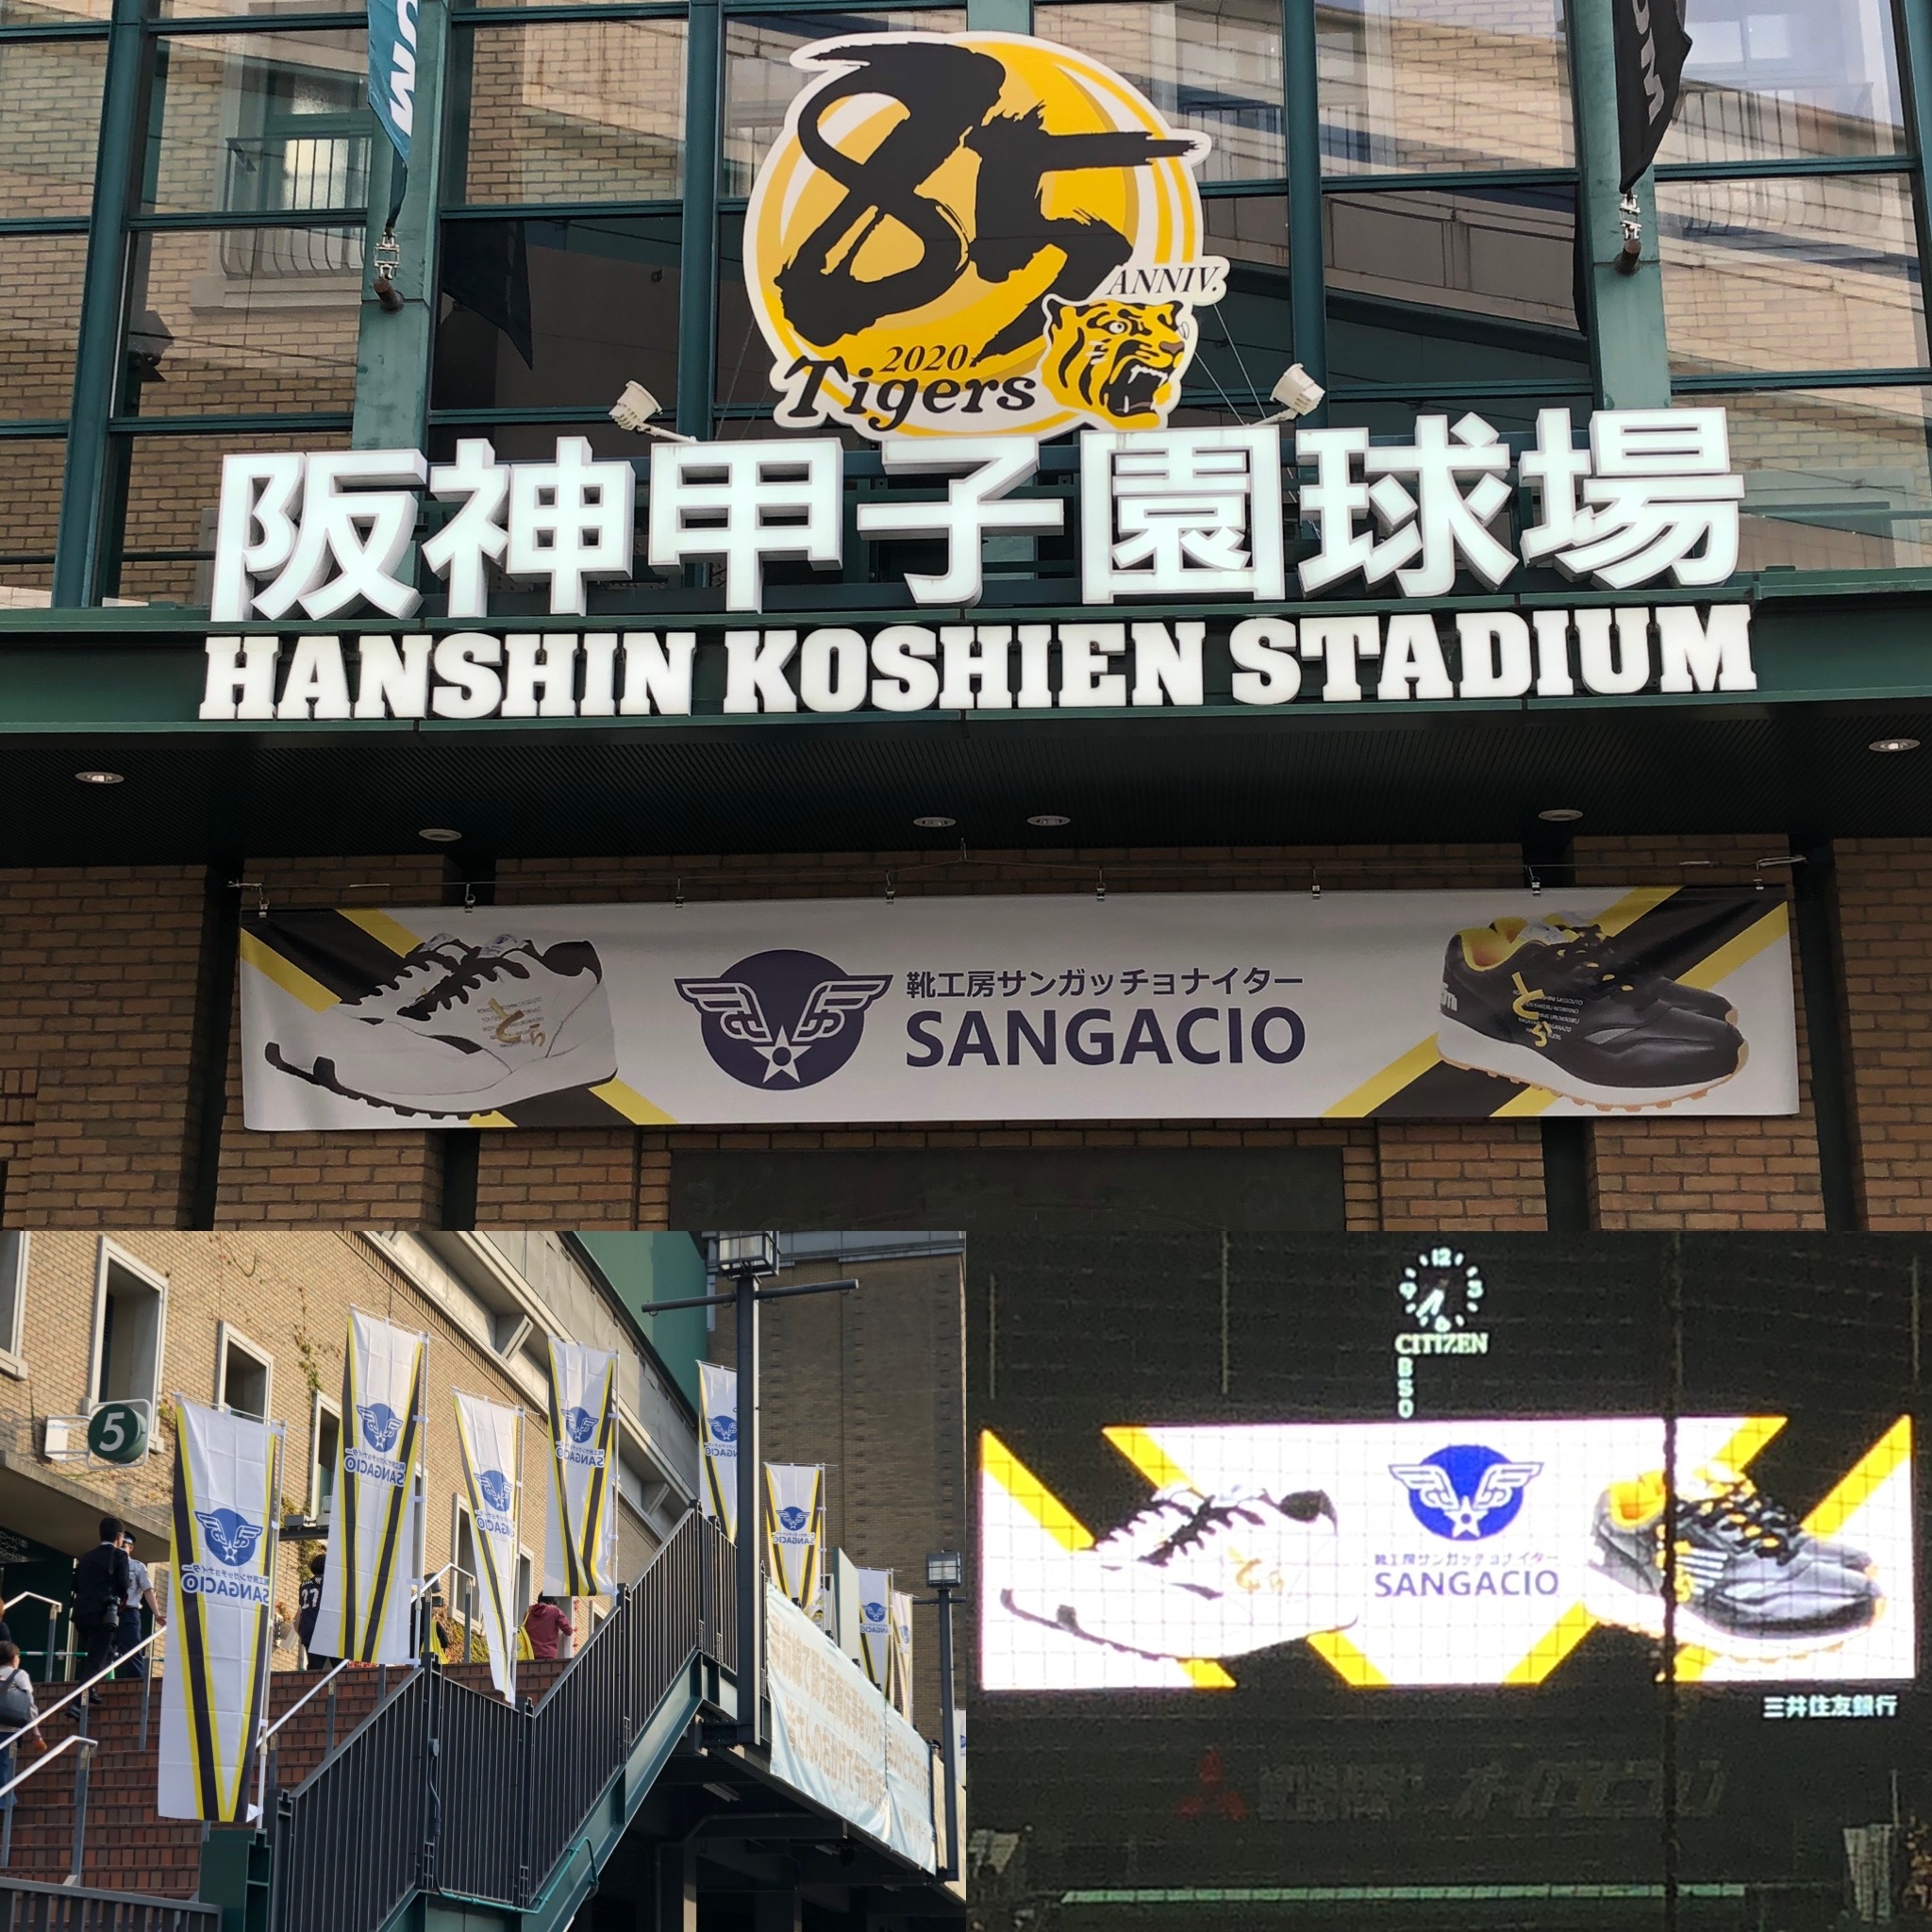 本日、阪神甲子園球場にて 冠協賛試合『靴工房サンガッチョナイター』が開催！